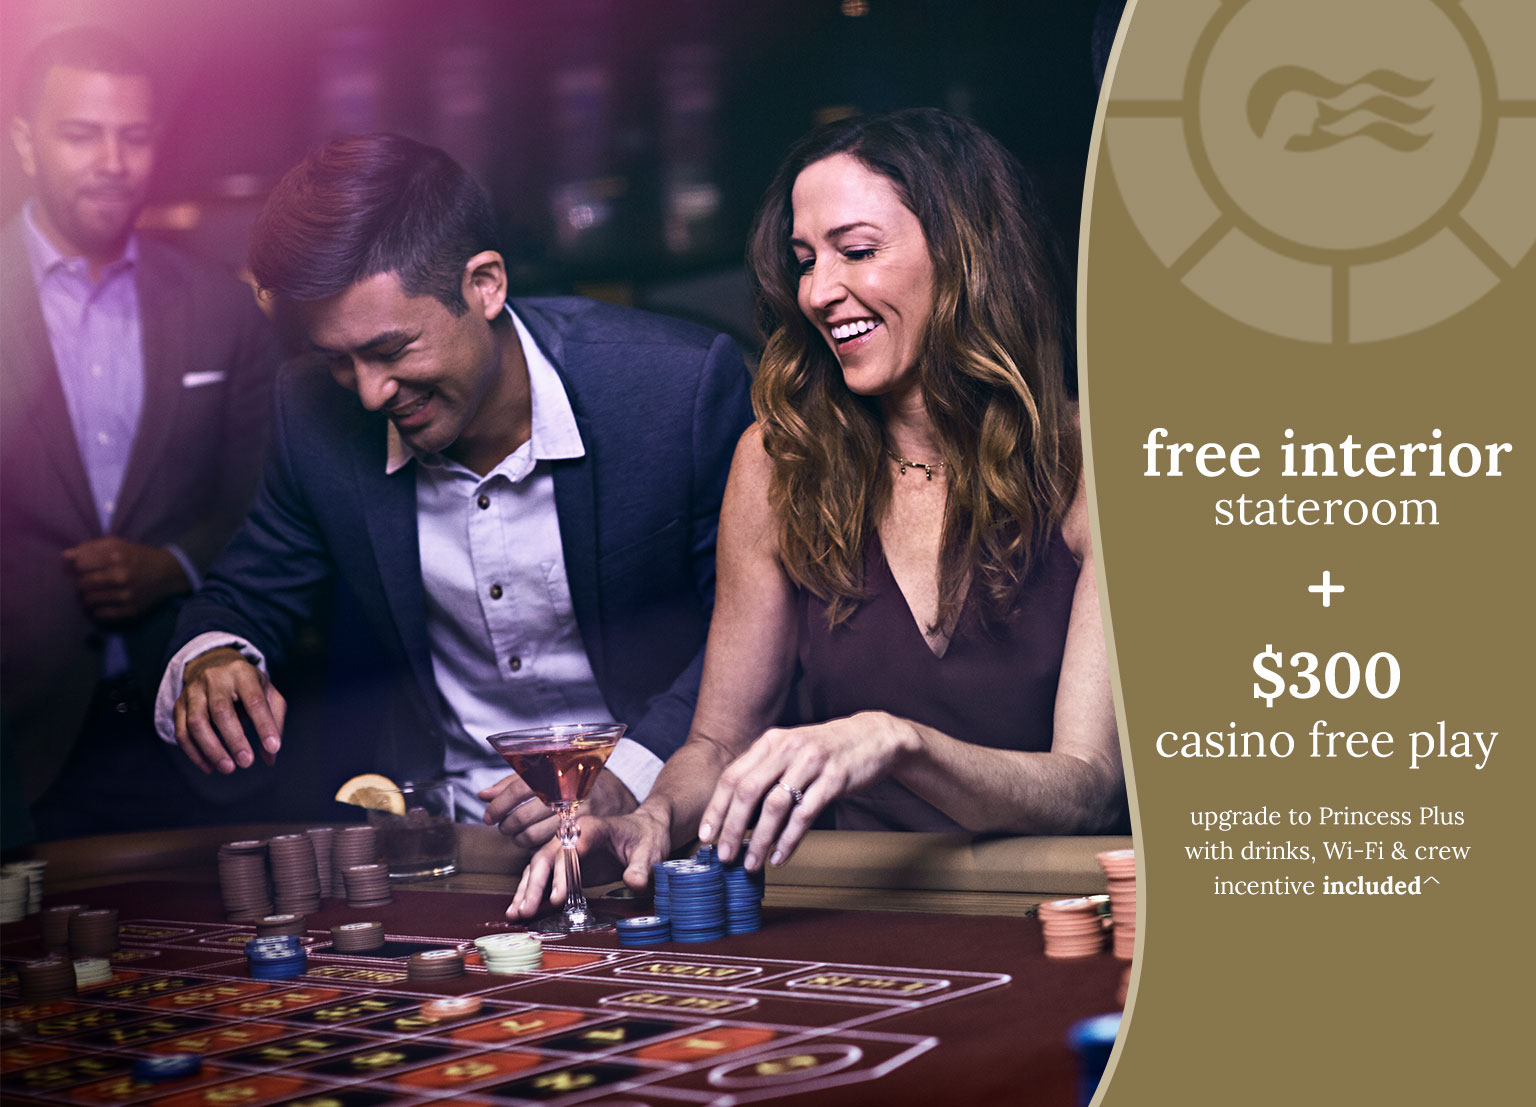 free interior stateroom + $300 casino free play - upgrade to princess plus